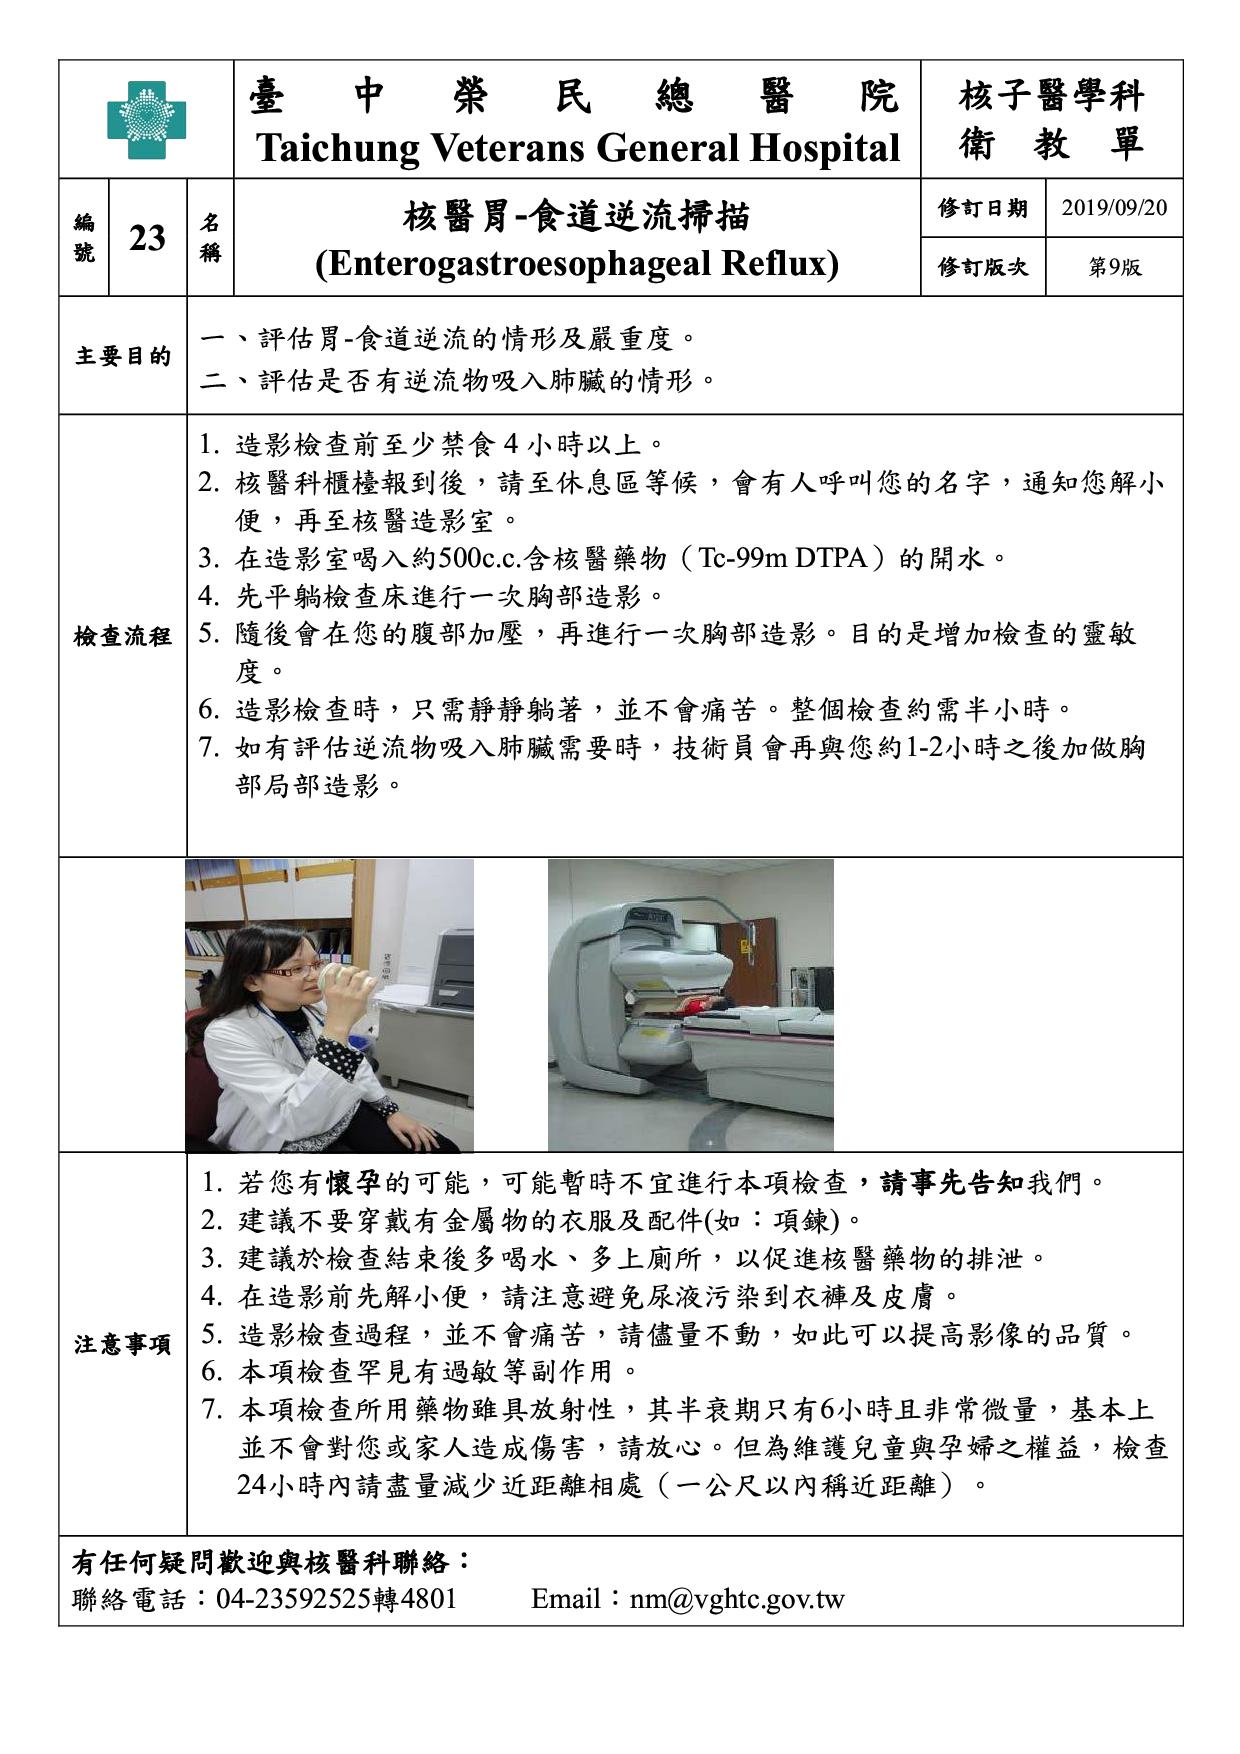 衛-23-核醫胃-食道逆流掃描(9)(20190920)